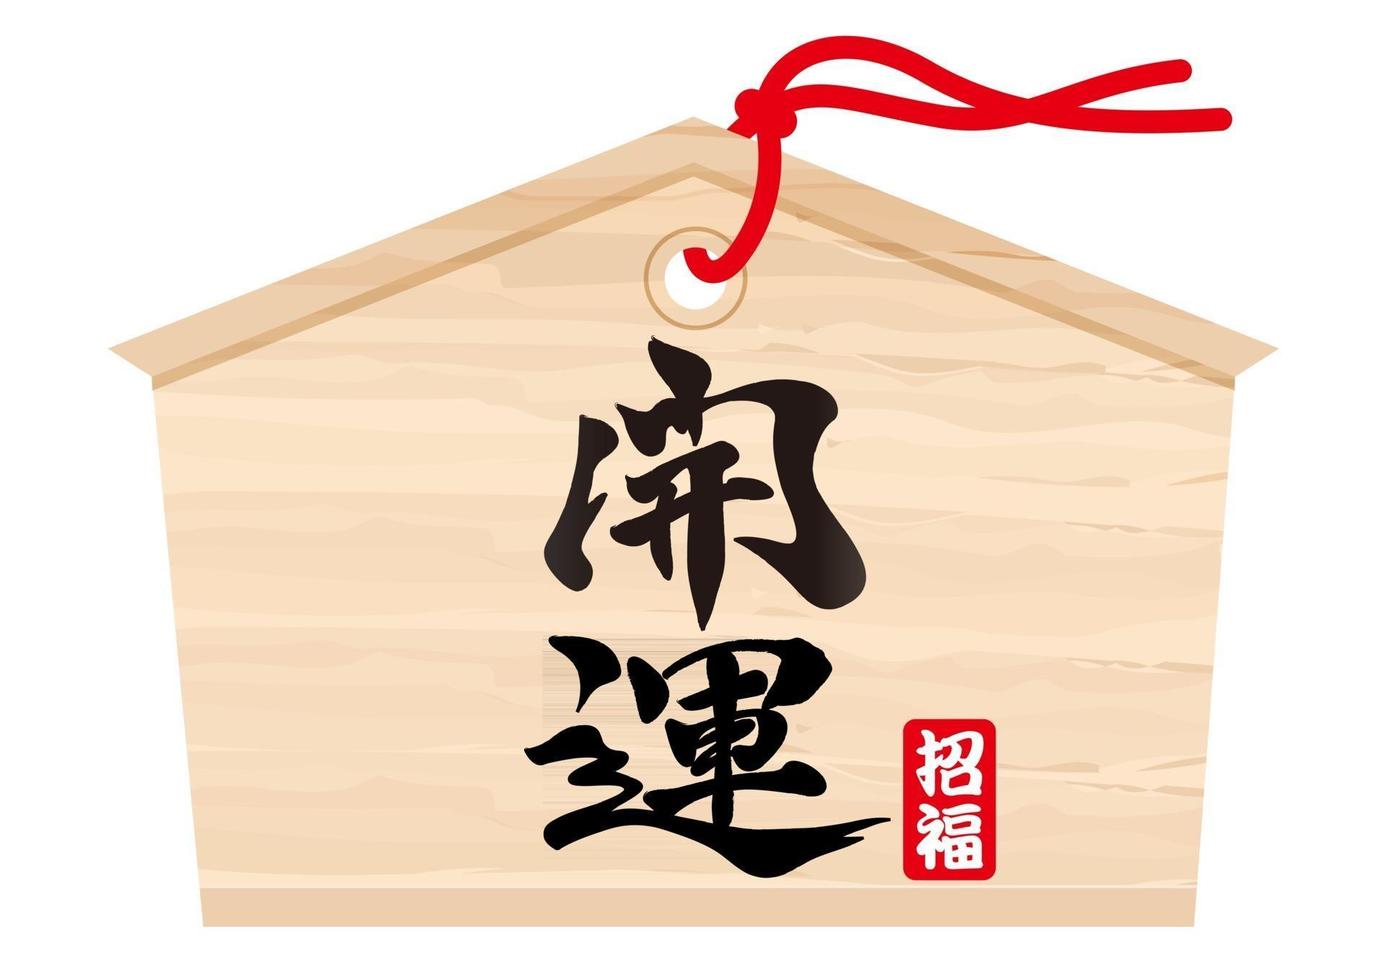 tavoletta votiva giapponese con calligrafia a pennello kanji che augura una fortuna migliore vettore